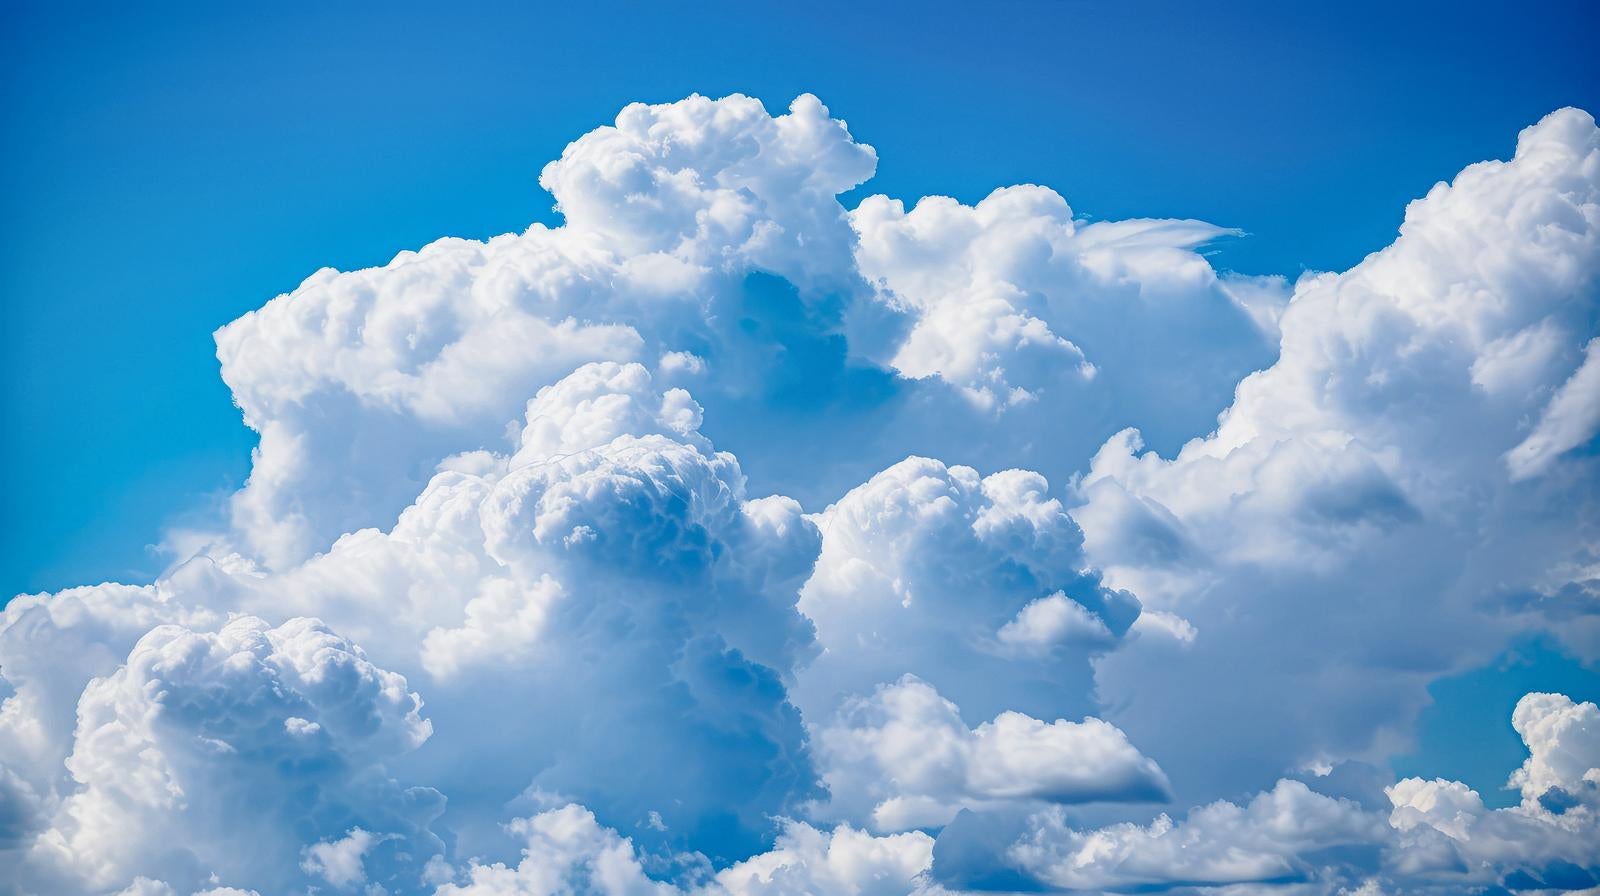 「夏の積乱雲」の写真